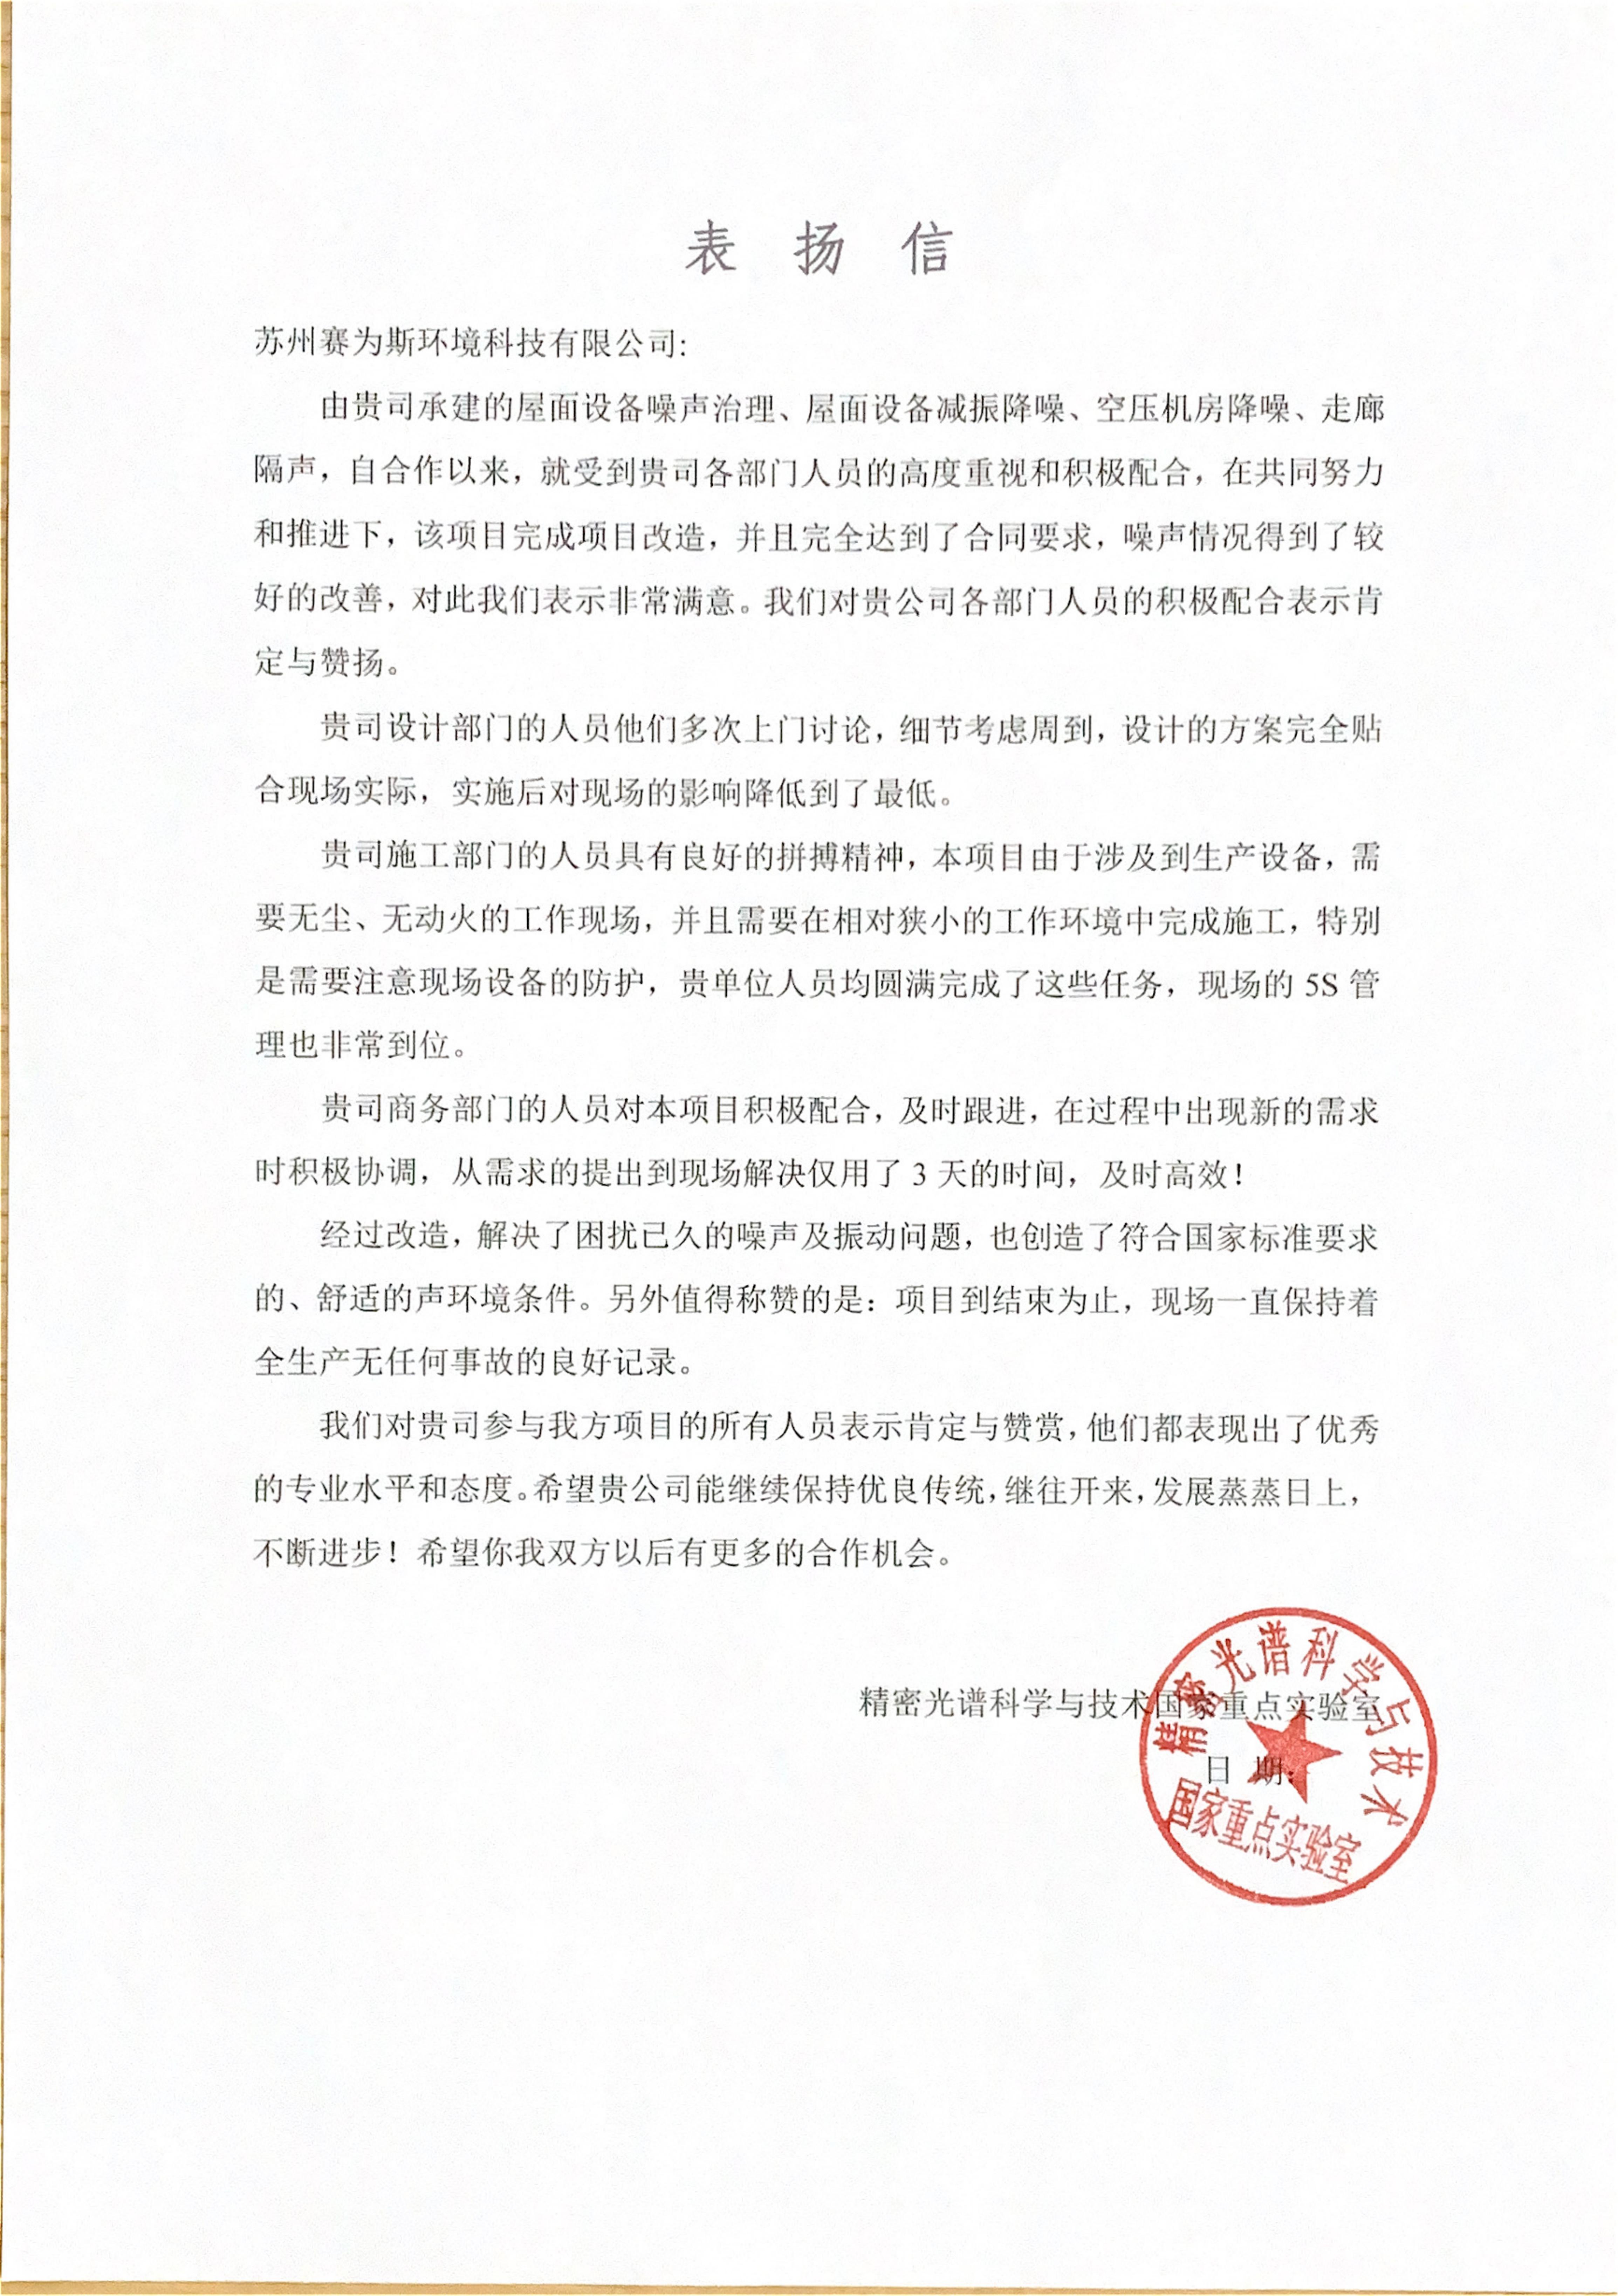 助力解决振动与噪声困扰，上海华师大国家重点实验室来函表彰